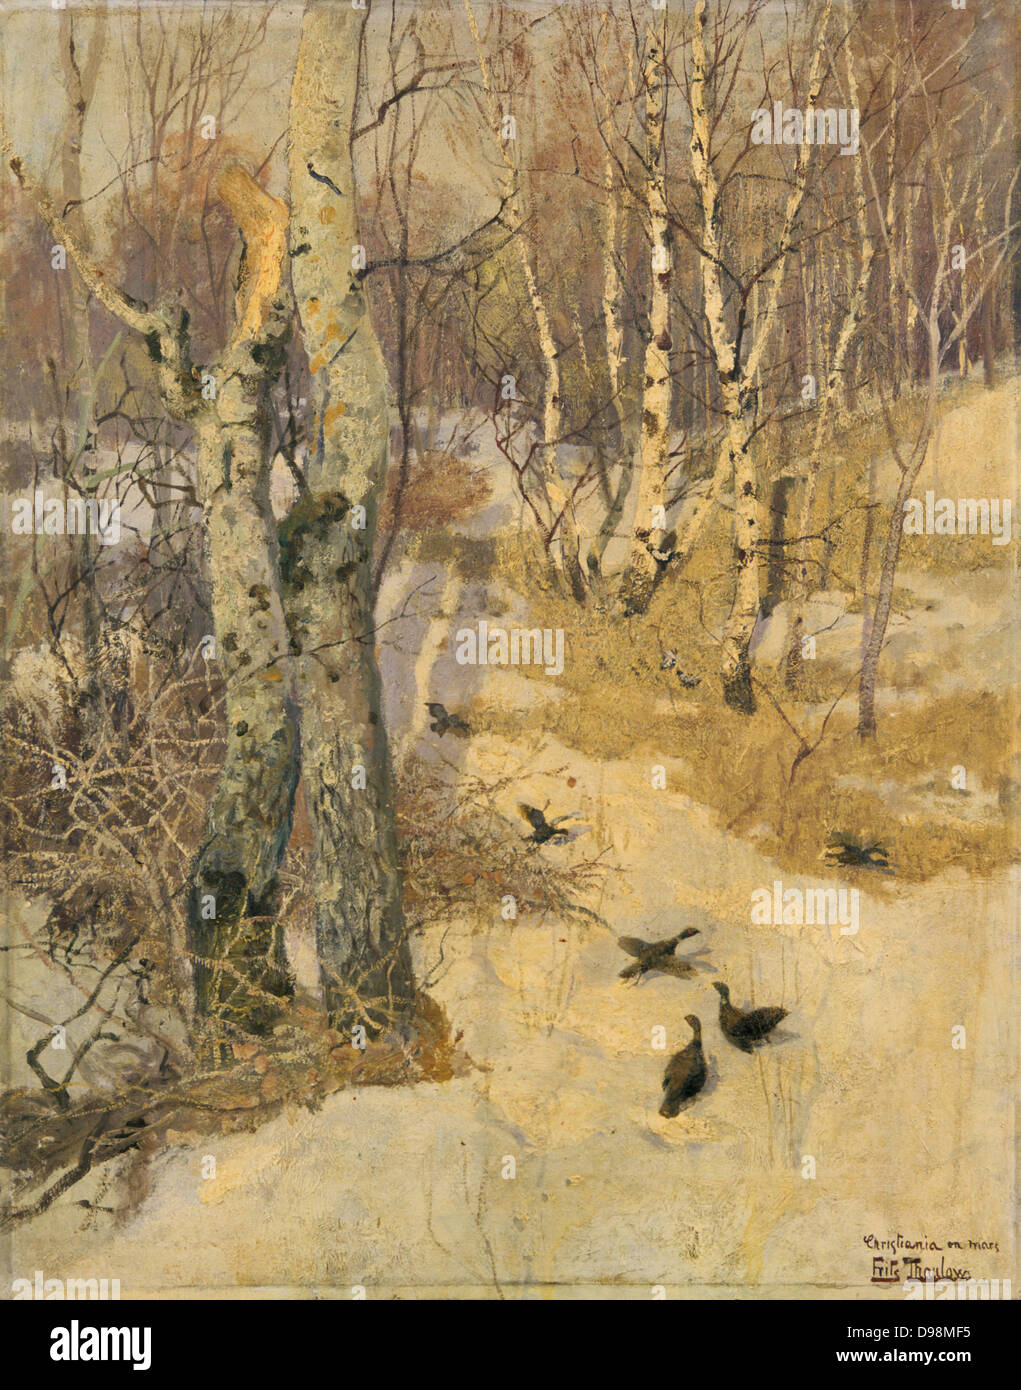 Chemin des bois sous la neige. Huile sur toile. Fritz Thaulow (1847-1906) peintre norvégien. Saison Hiver Oiseaux froid Bouleau Arbre Faisan Banque D'Images